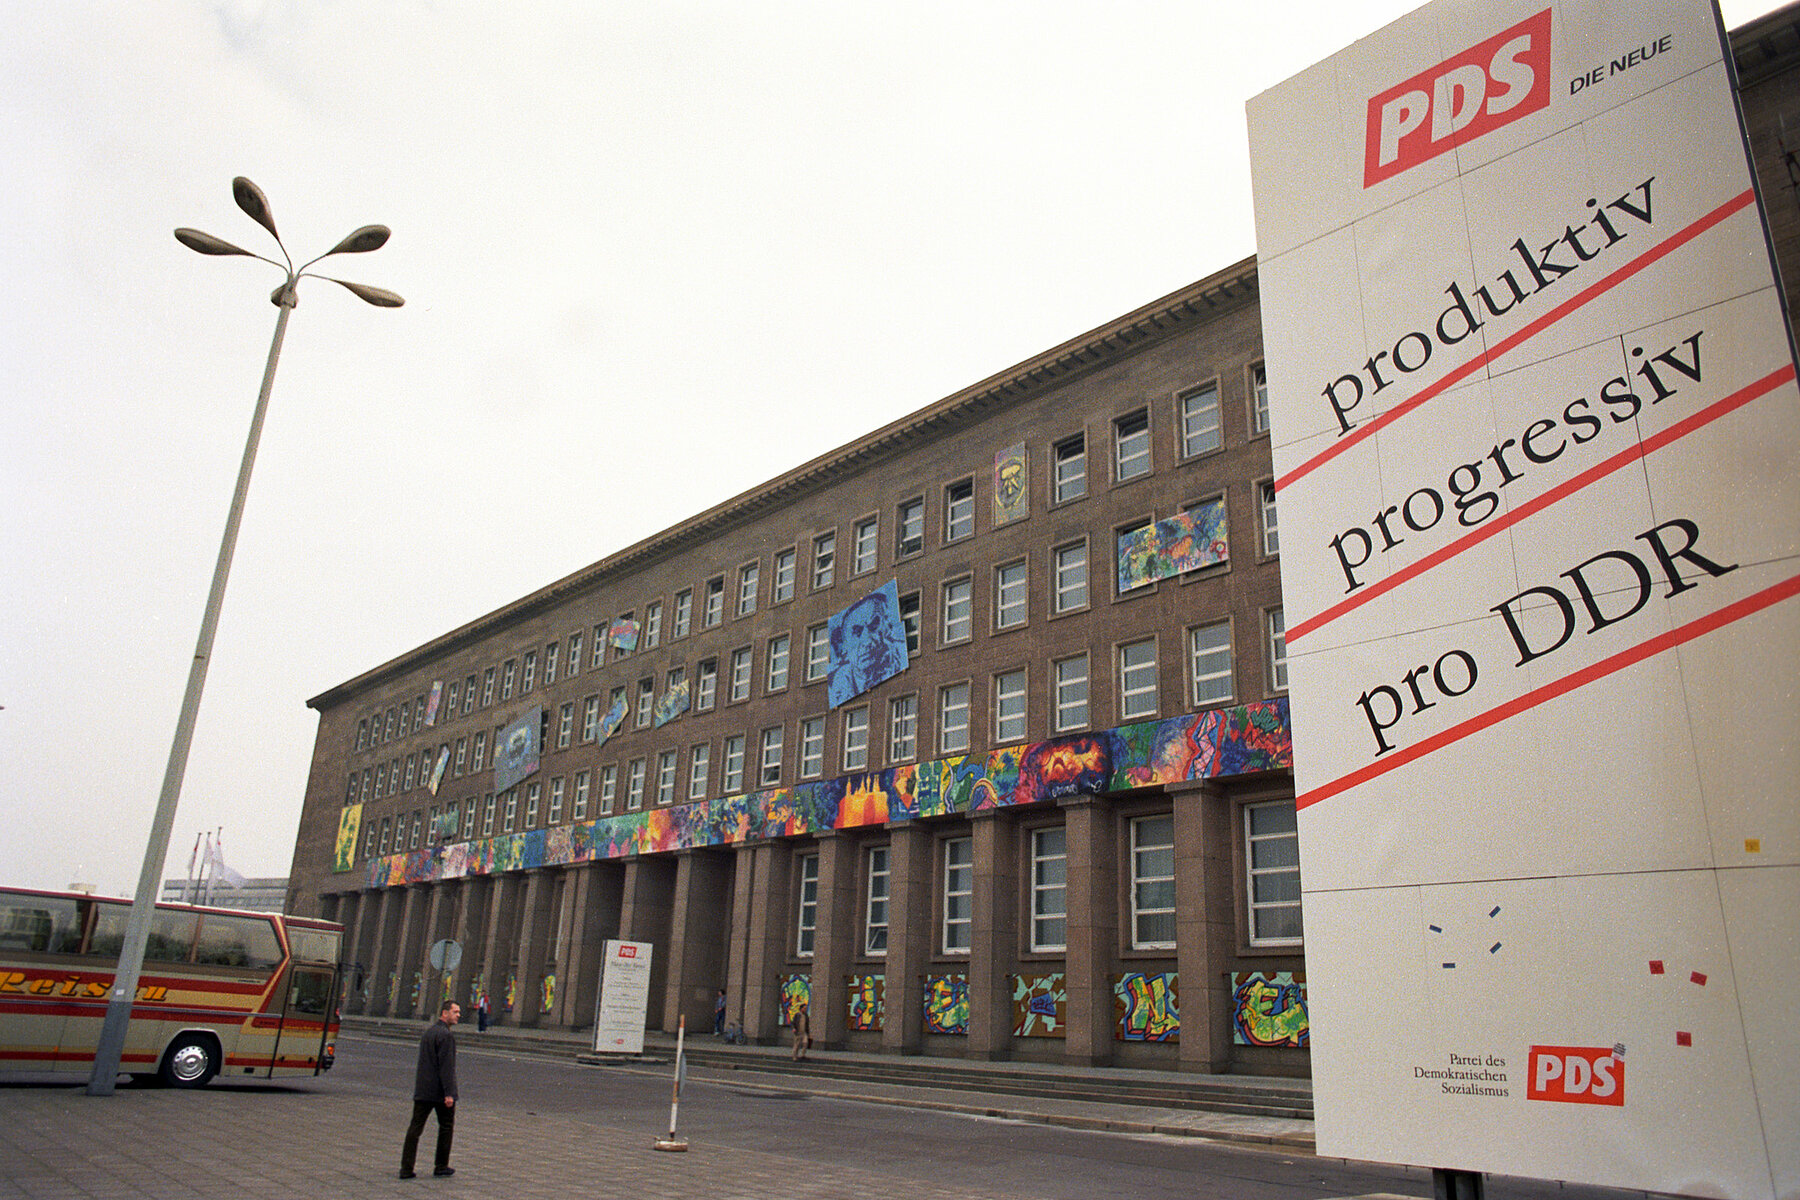 Vor dem Haus am Werderschen Markt steht ein großes Werbeplakat für die PDS. Darauf ist der Slogan produktiv, progressiv, pro DDR zu lesen.